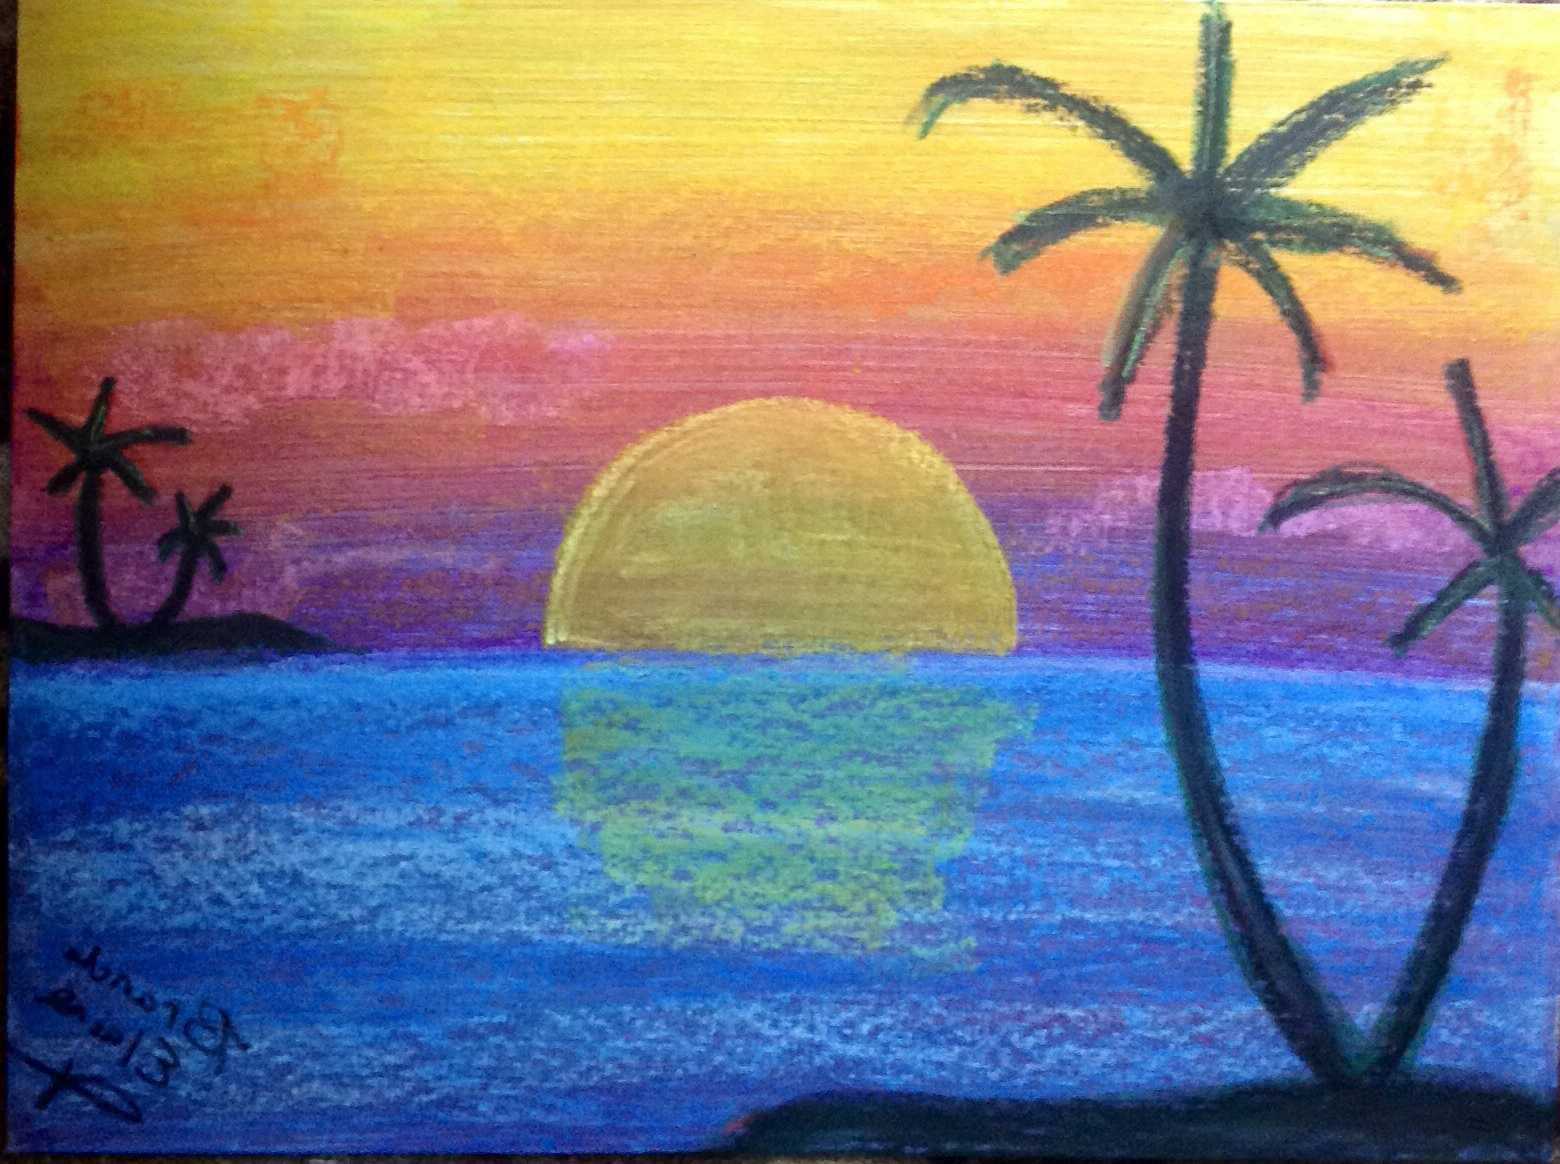 Закат на море рисунок карандашом